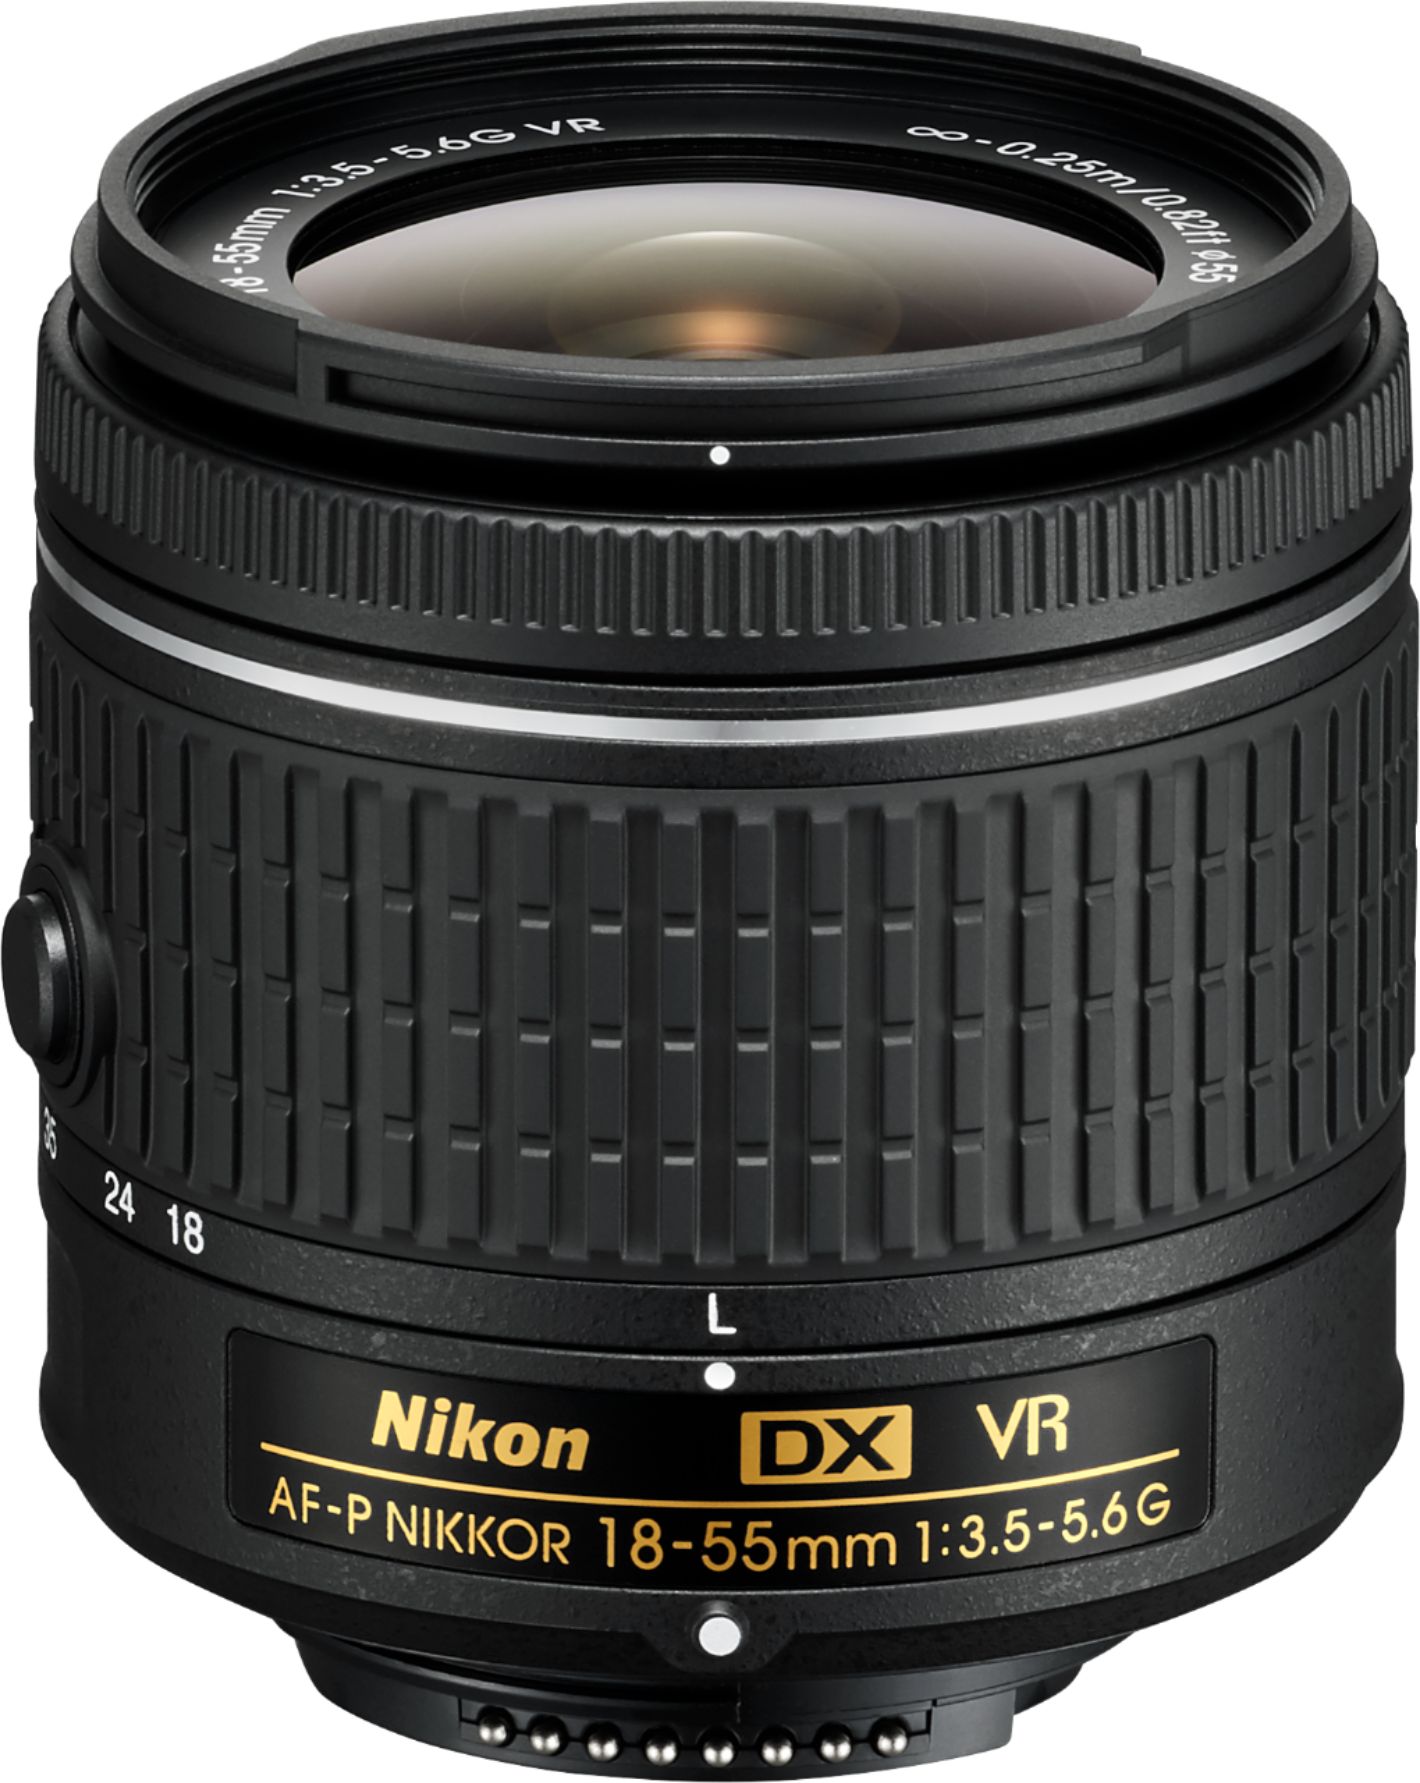 Nikon AF-P DX NIKKOR 18-55mm f/3.5-5.6G VR Zoom Lens for APS-C F-mount  cameras black 20059 - Best Buy